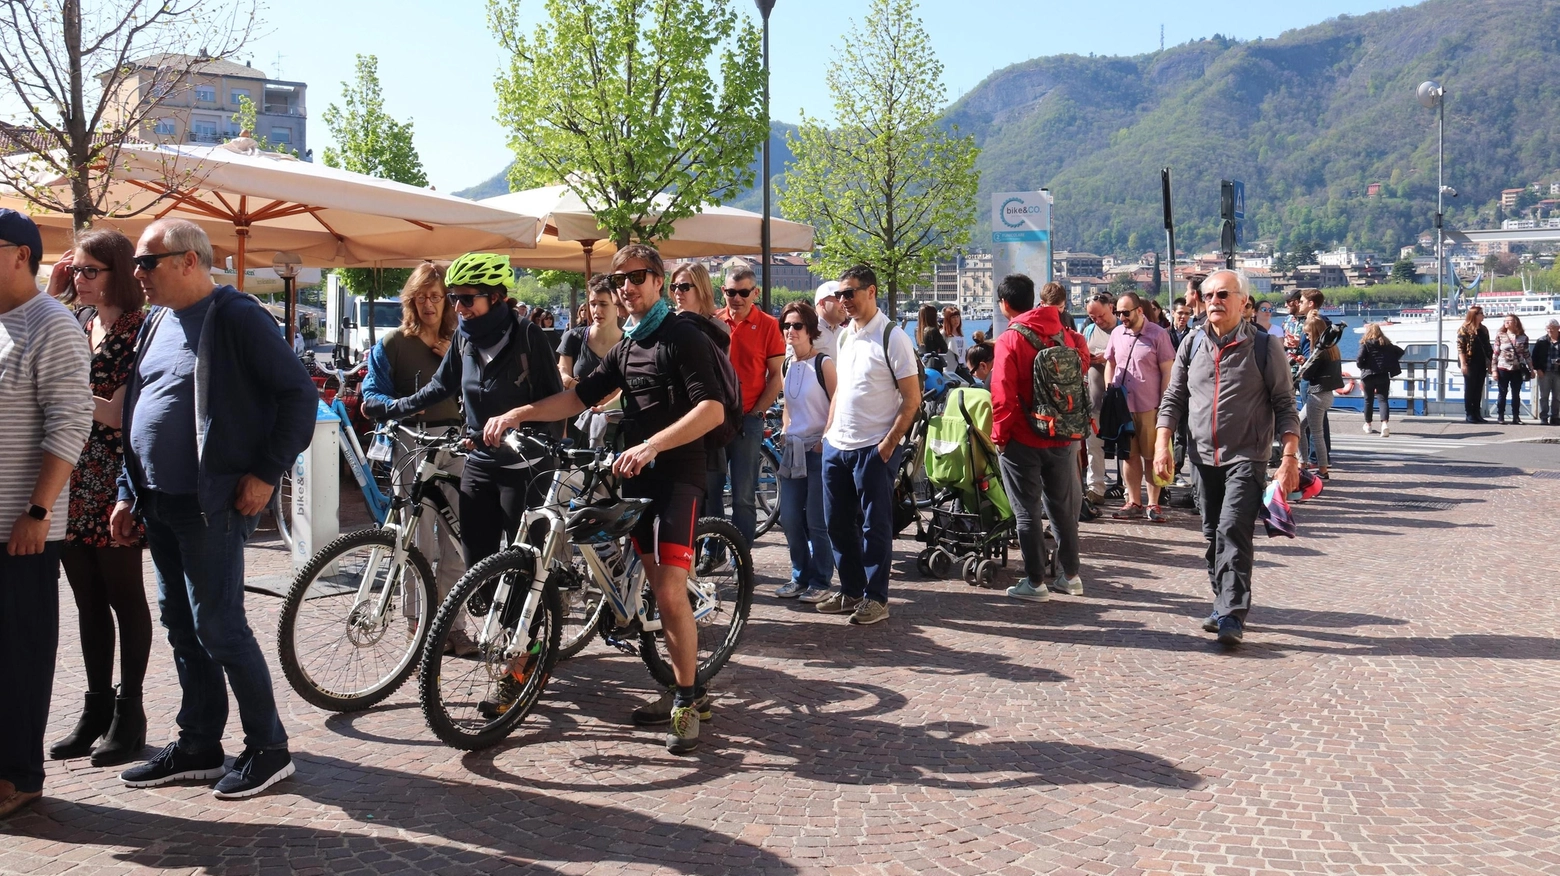 I flussi turistici in provincia di Lecco registrano un aumento significativo, con 350.000 arrivi e 1 milione di presenze. Le strutture ricettive sono 1.500, ma il tasso di occupazione è basso. Le mete preferite sono i paesi sul lago di Como.